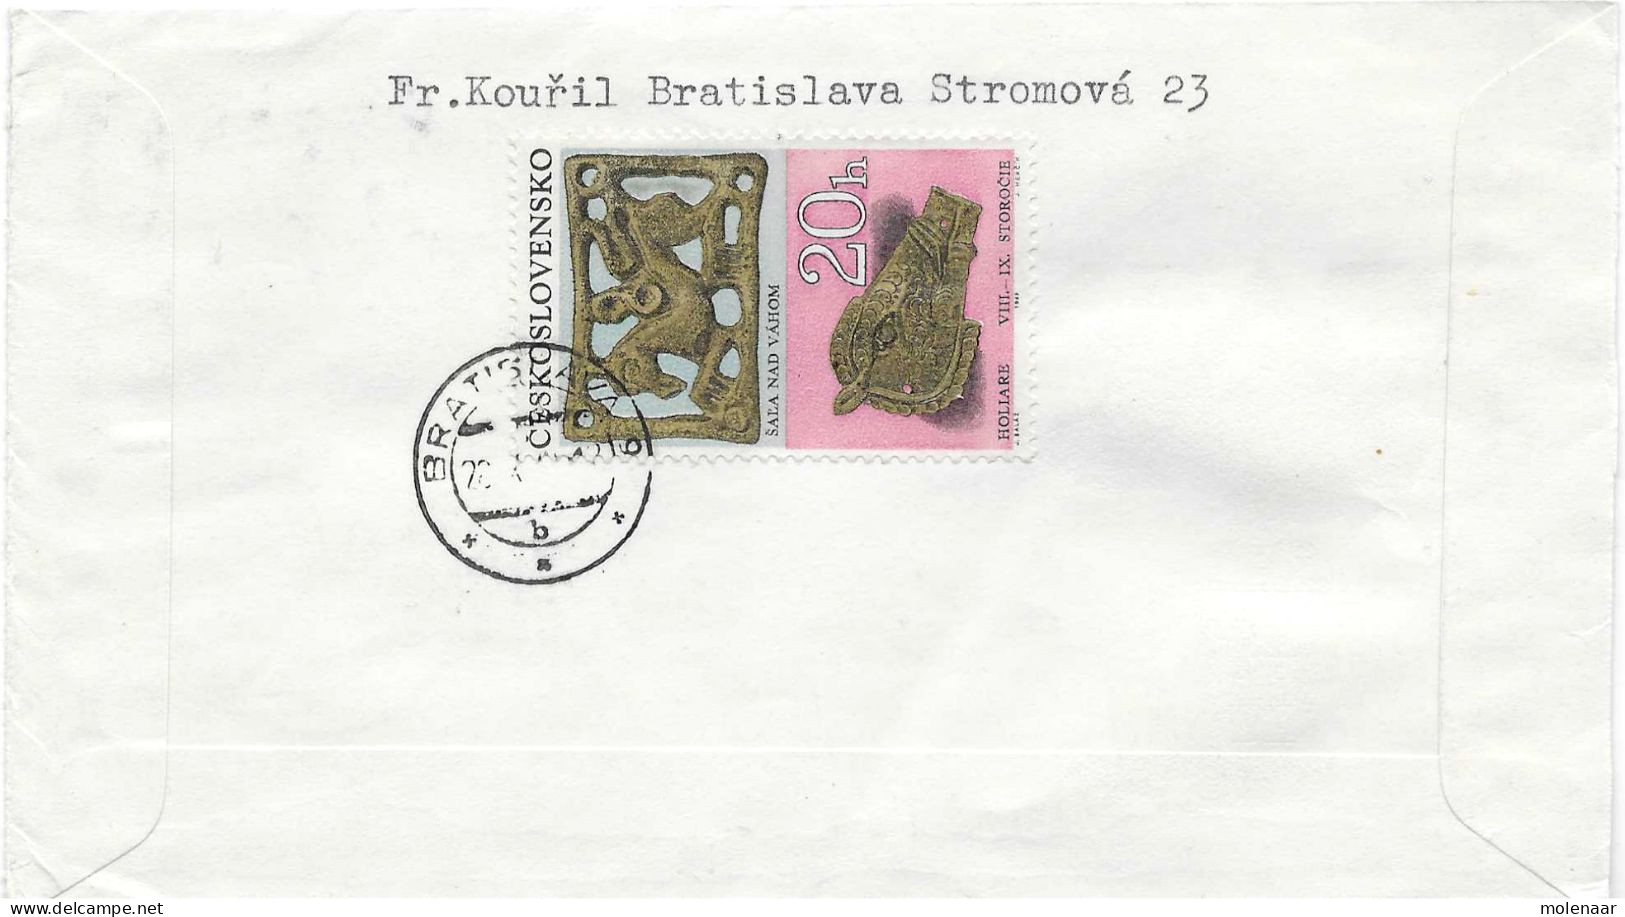 Postzegels > Europa > Tsjechoslowakije > 1970-1979 >aangetekende Brief Met 3 Postzegels  (17953) - Covers & Documents